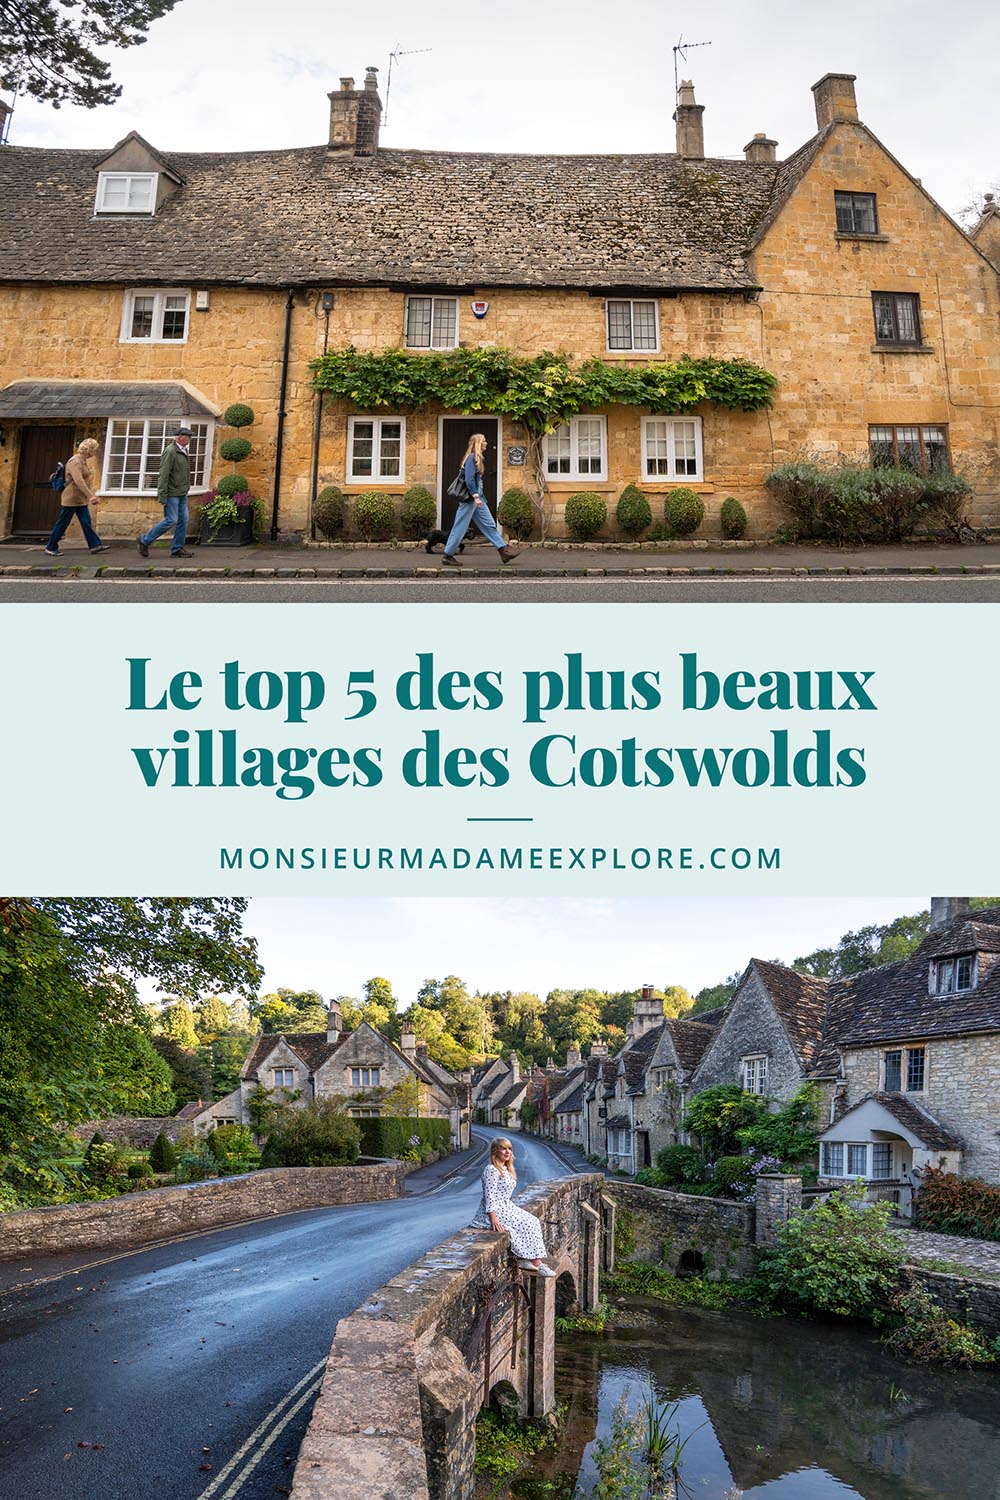 Le top 5 des plus beaux villages des Cotwolds en Angleterre, Monsieur+Madame Explore, Blogue de voyage, UK / The 5 Prettiest Cotswolds villages to visit, UK